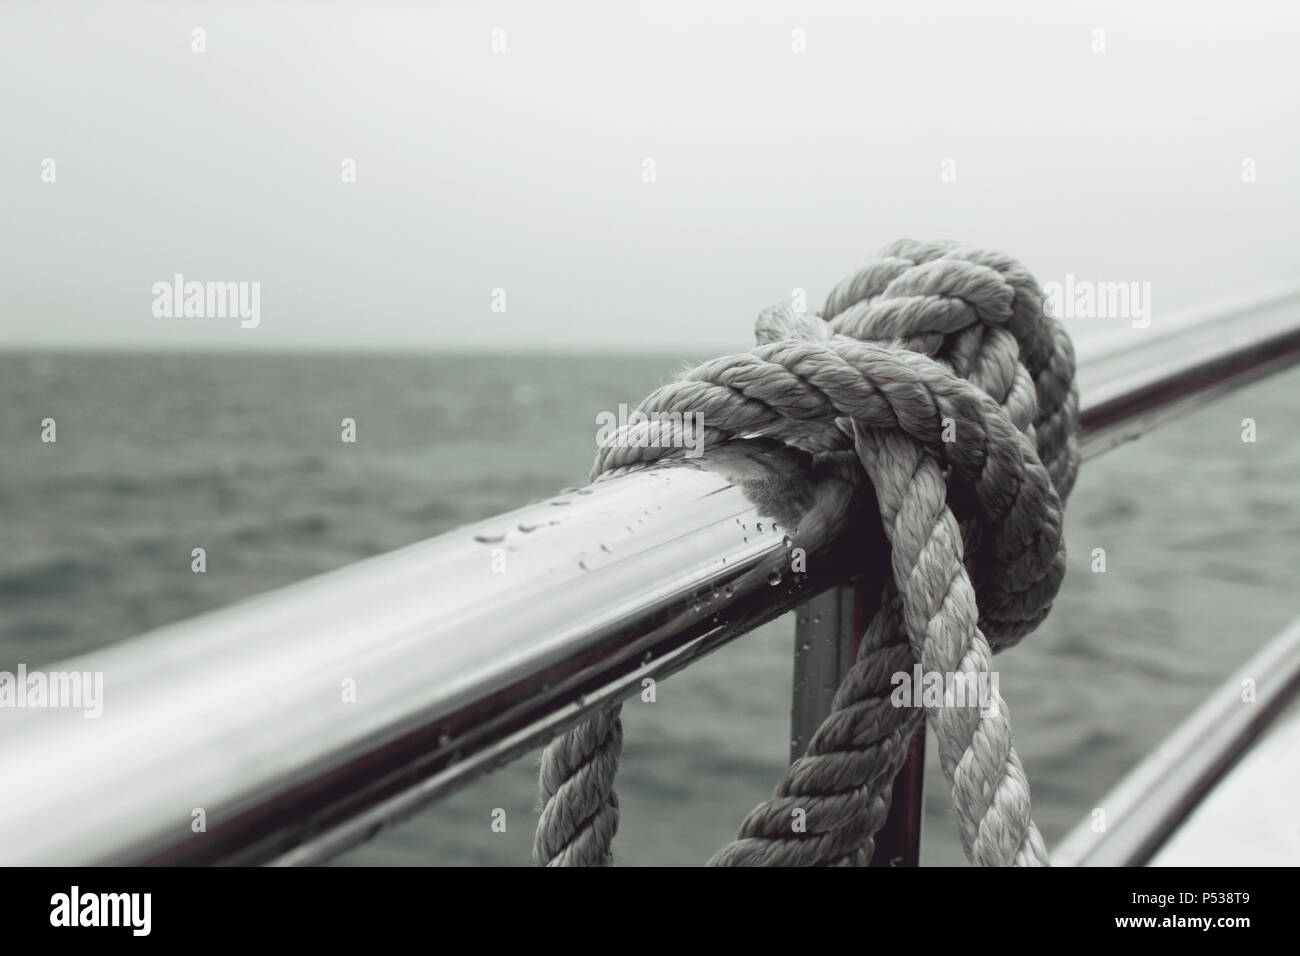 Eine Leine, die an einer Reling eines Bootes befestigt ist, das Wasser im Hintergrund, bei schlechter Sicht. Stockfoto